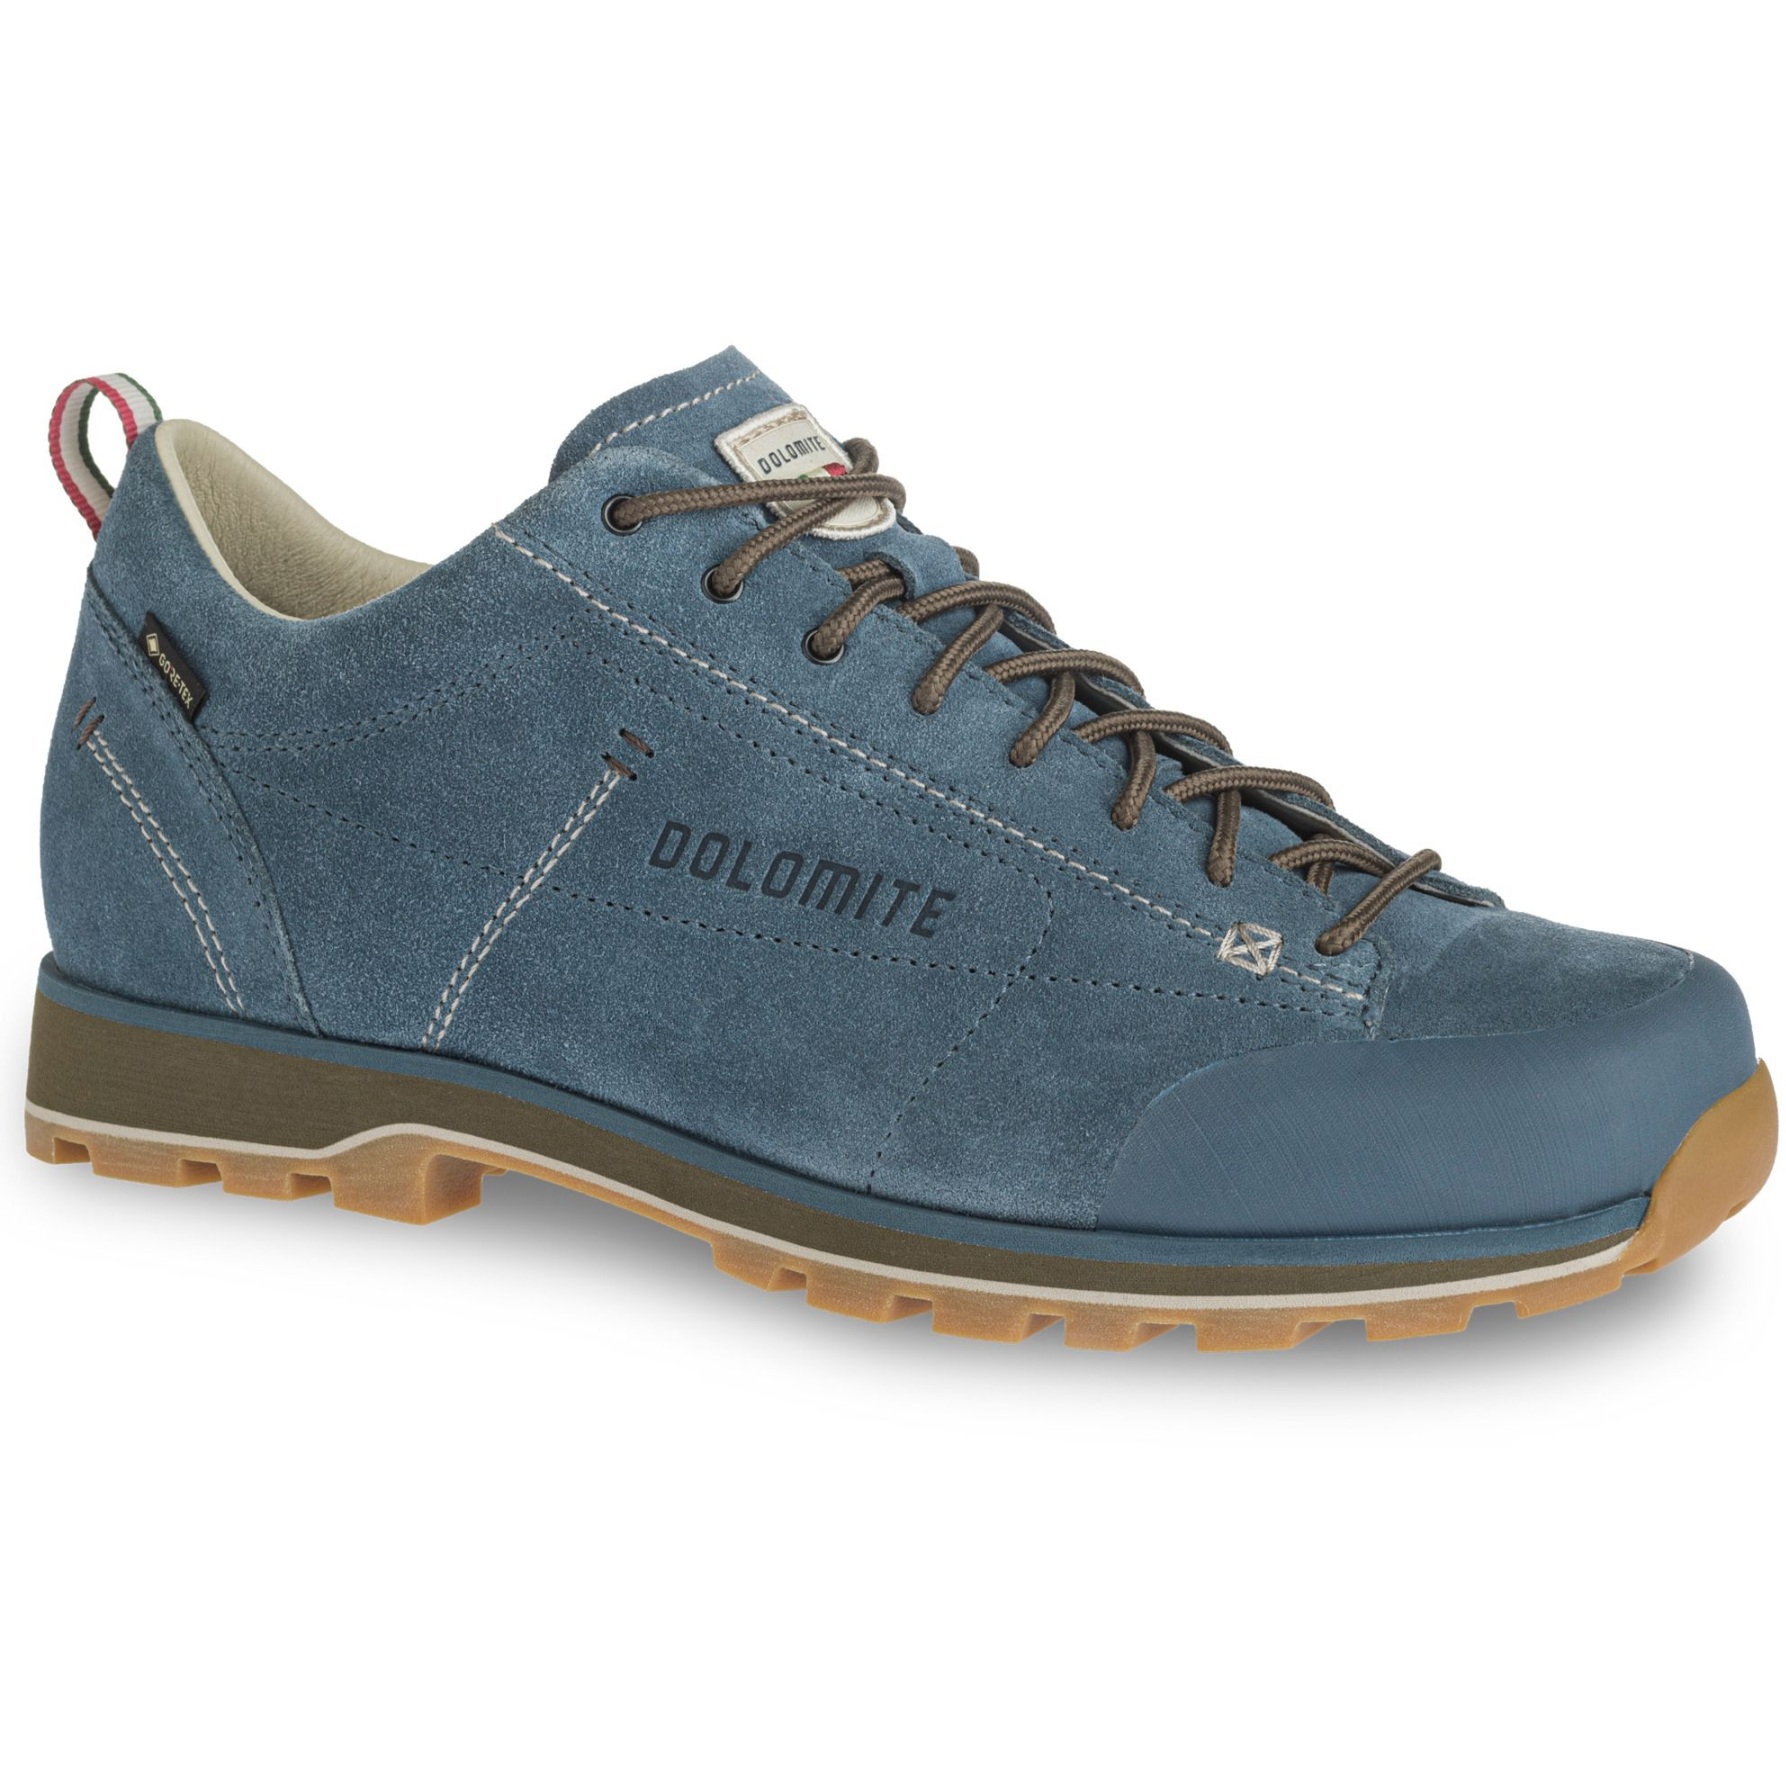 Produktbild von Dolomite 54 Low GORE-TEX Schuhe Herren - denim blue